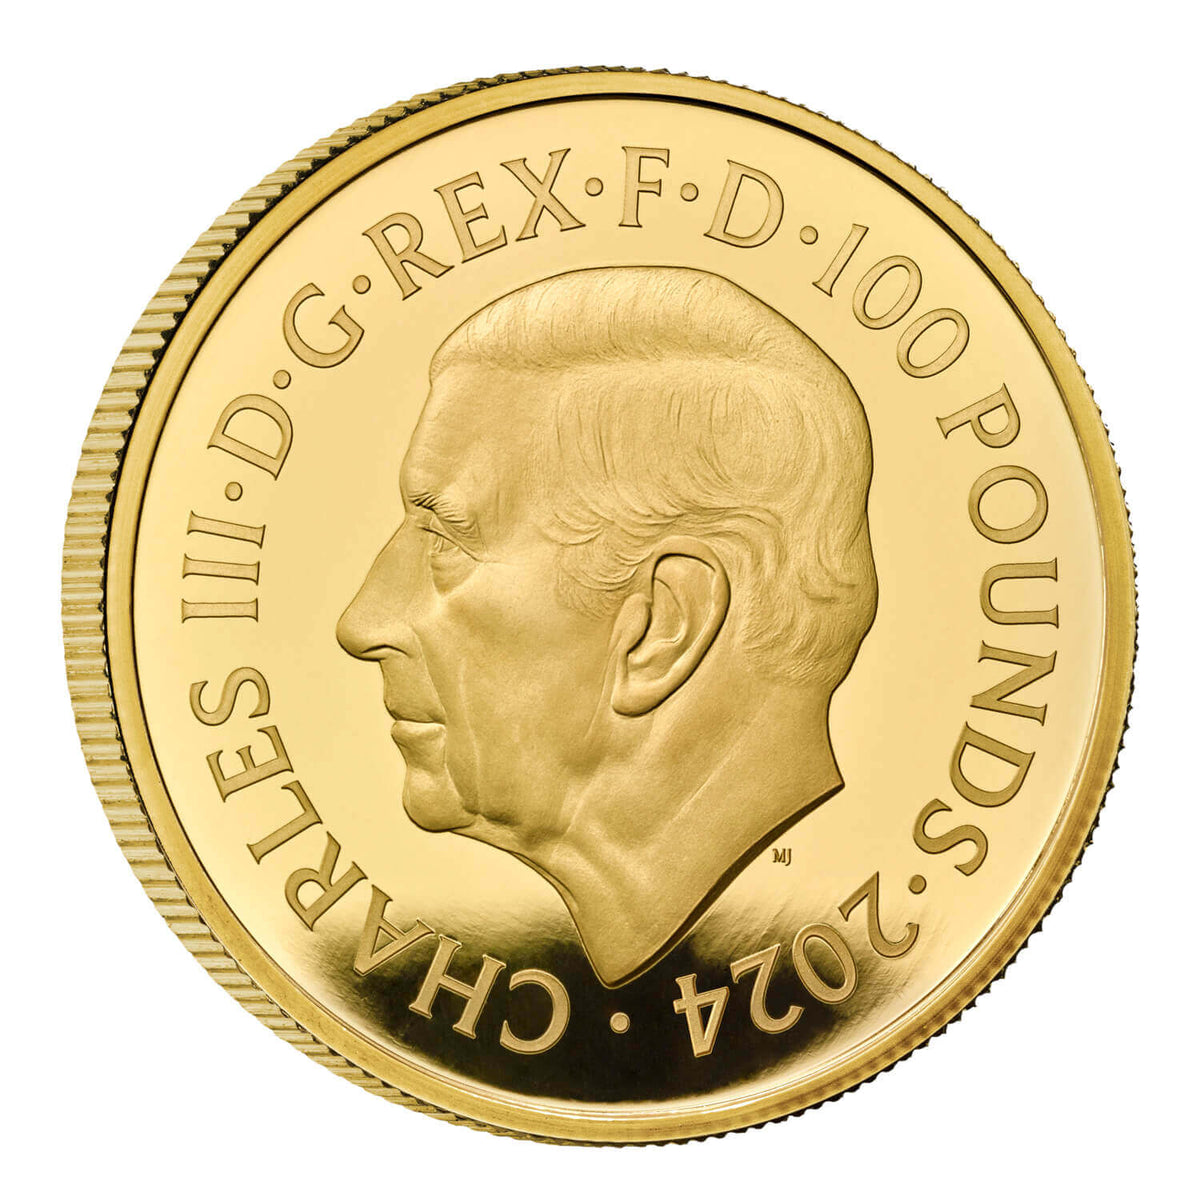 James Bond 1-Unzen-Goldmünze in Proof-Form – nummerierte Ausgabe der 1980er Jahre – von The Royal Mint